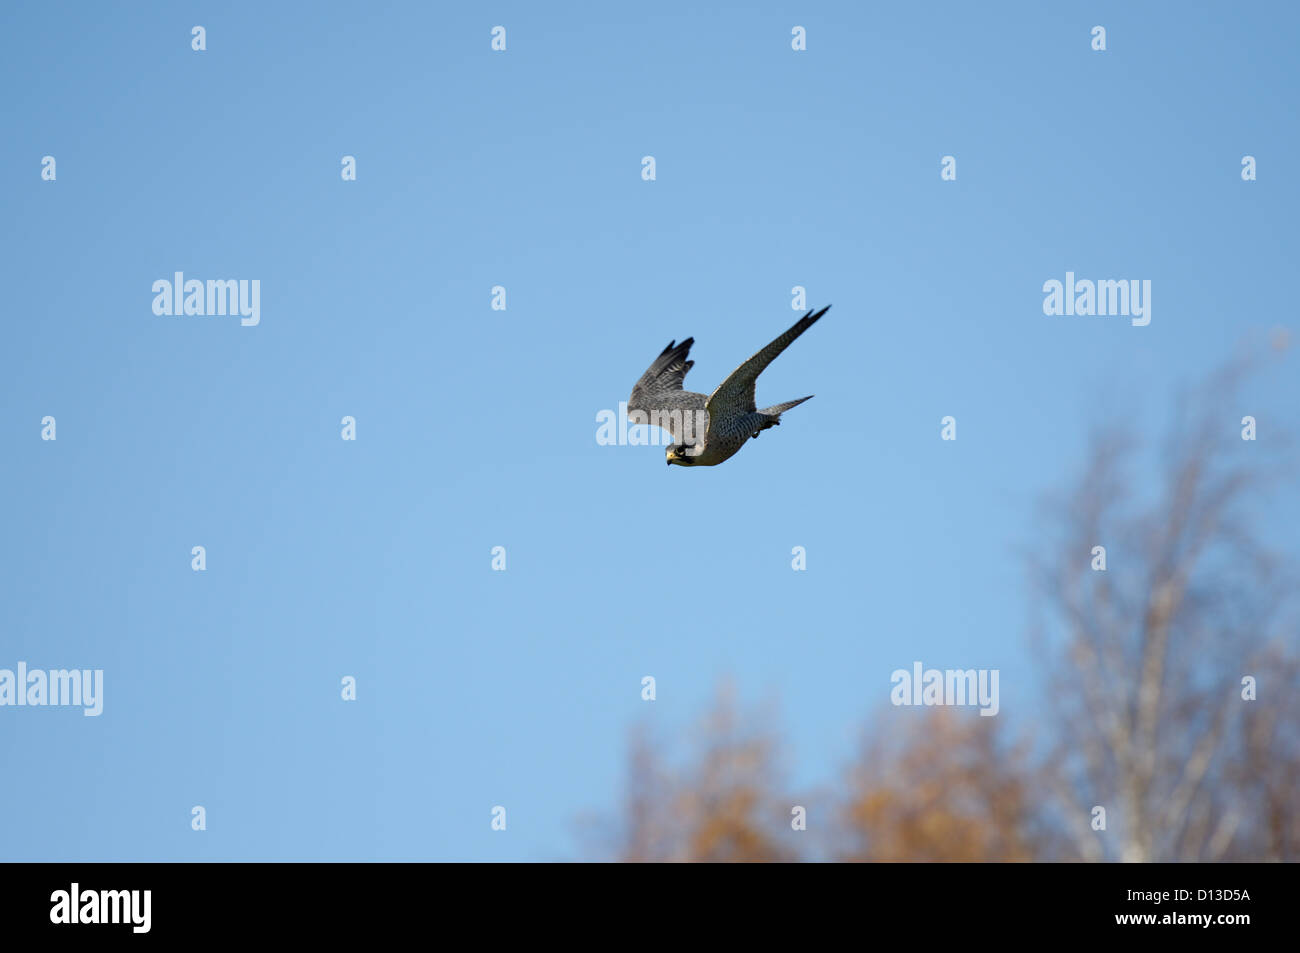 A Peregrine Falcon in flight Stock Photo